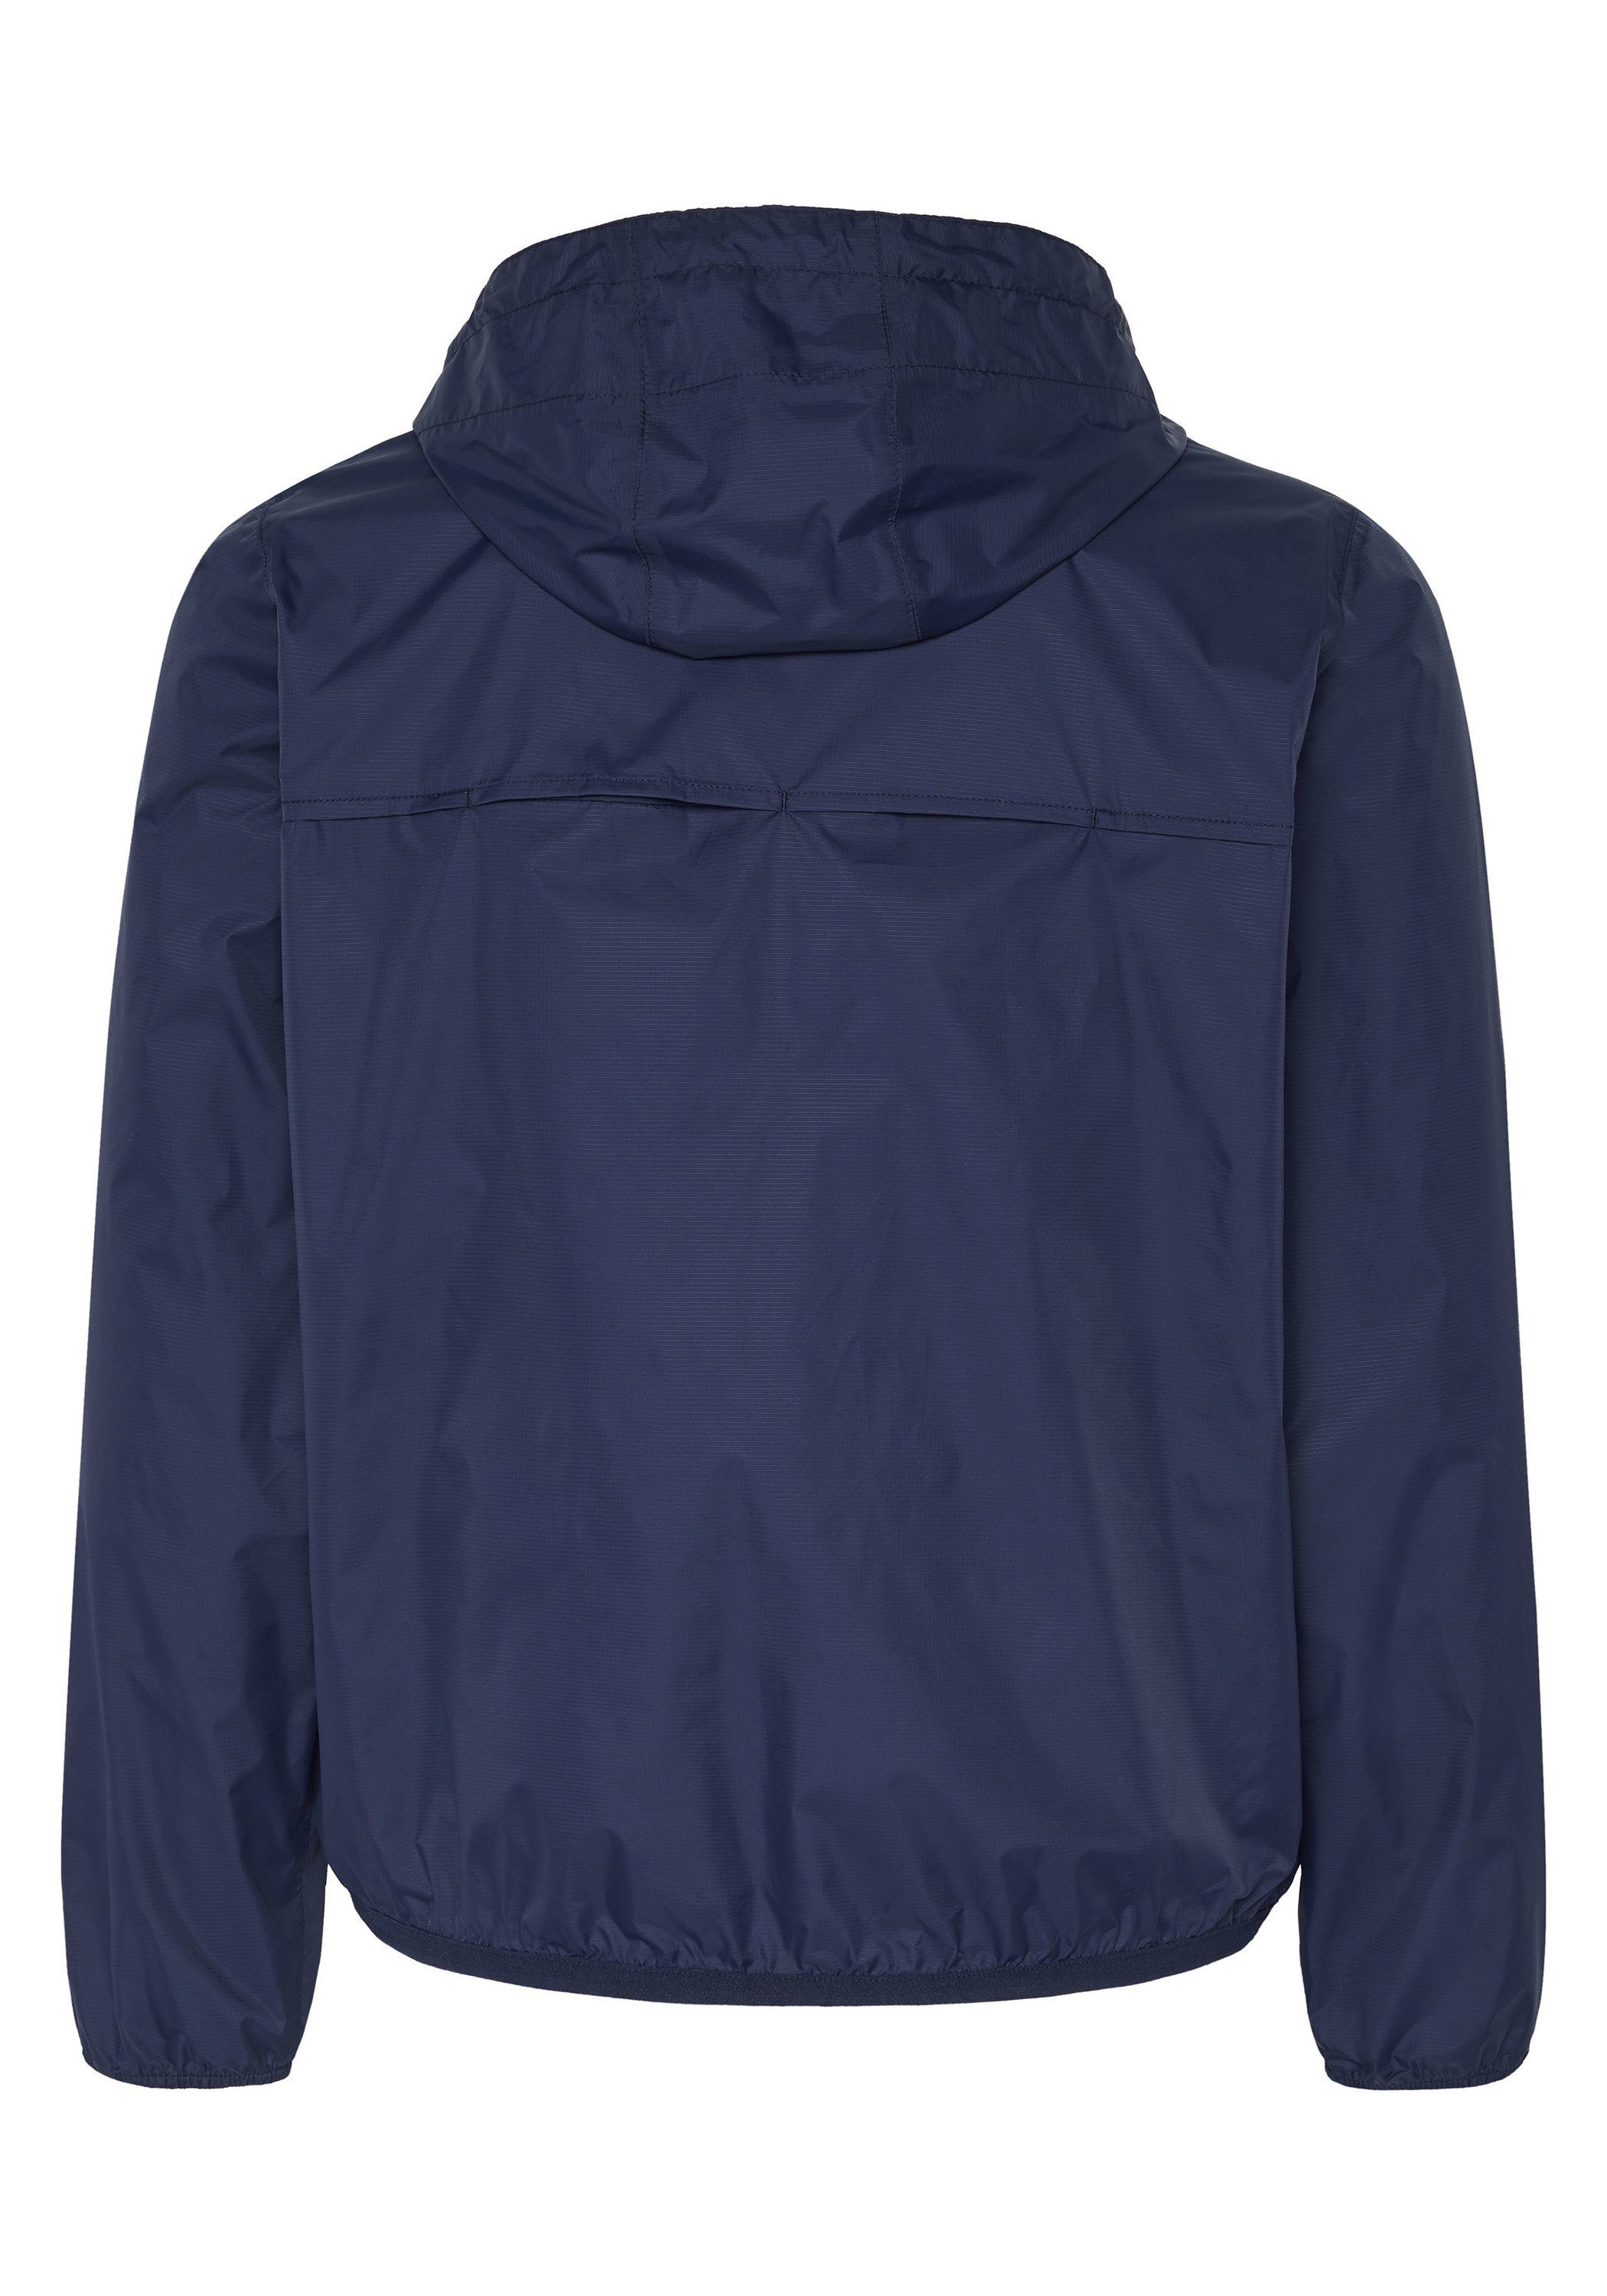 1 Regenjacke und blau Jumper-Motiv Outdoorjacke Taschen-Funktion Chiemsee dunkel mit